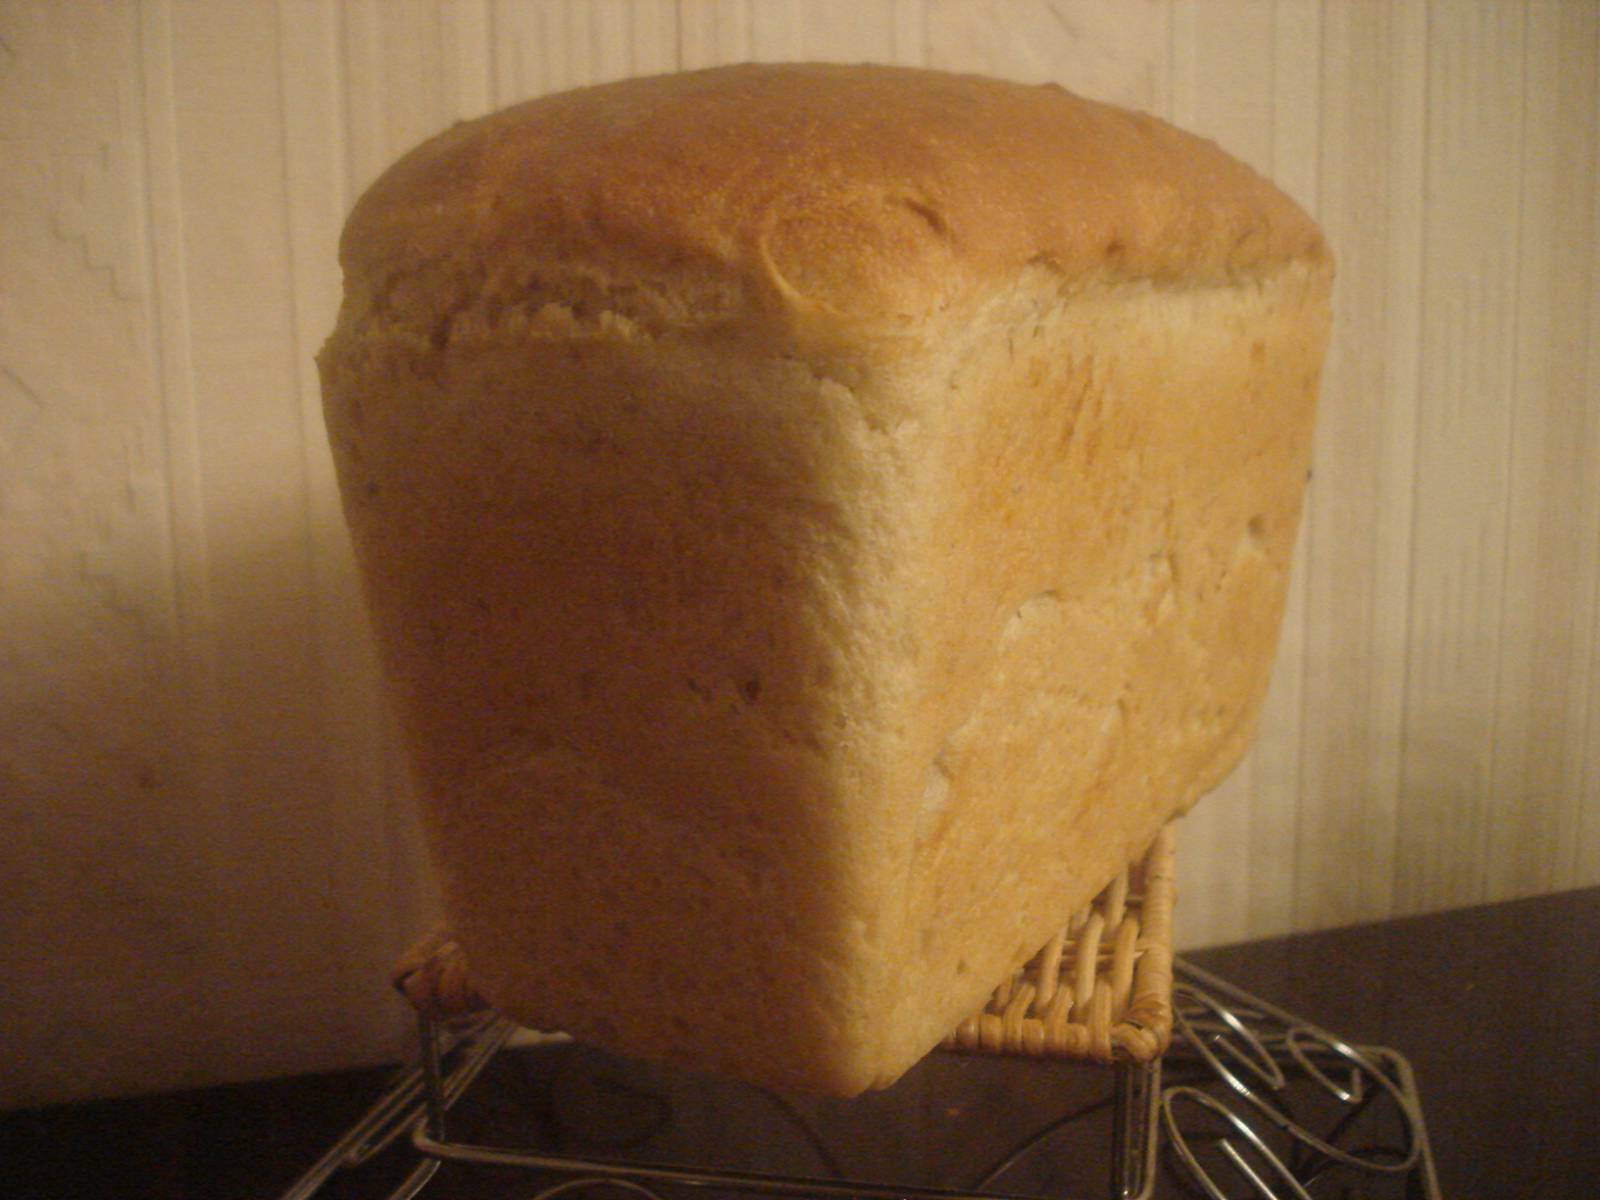 לחם חיטה "לייסי" עם מחמצת